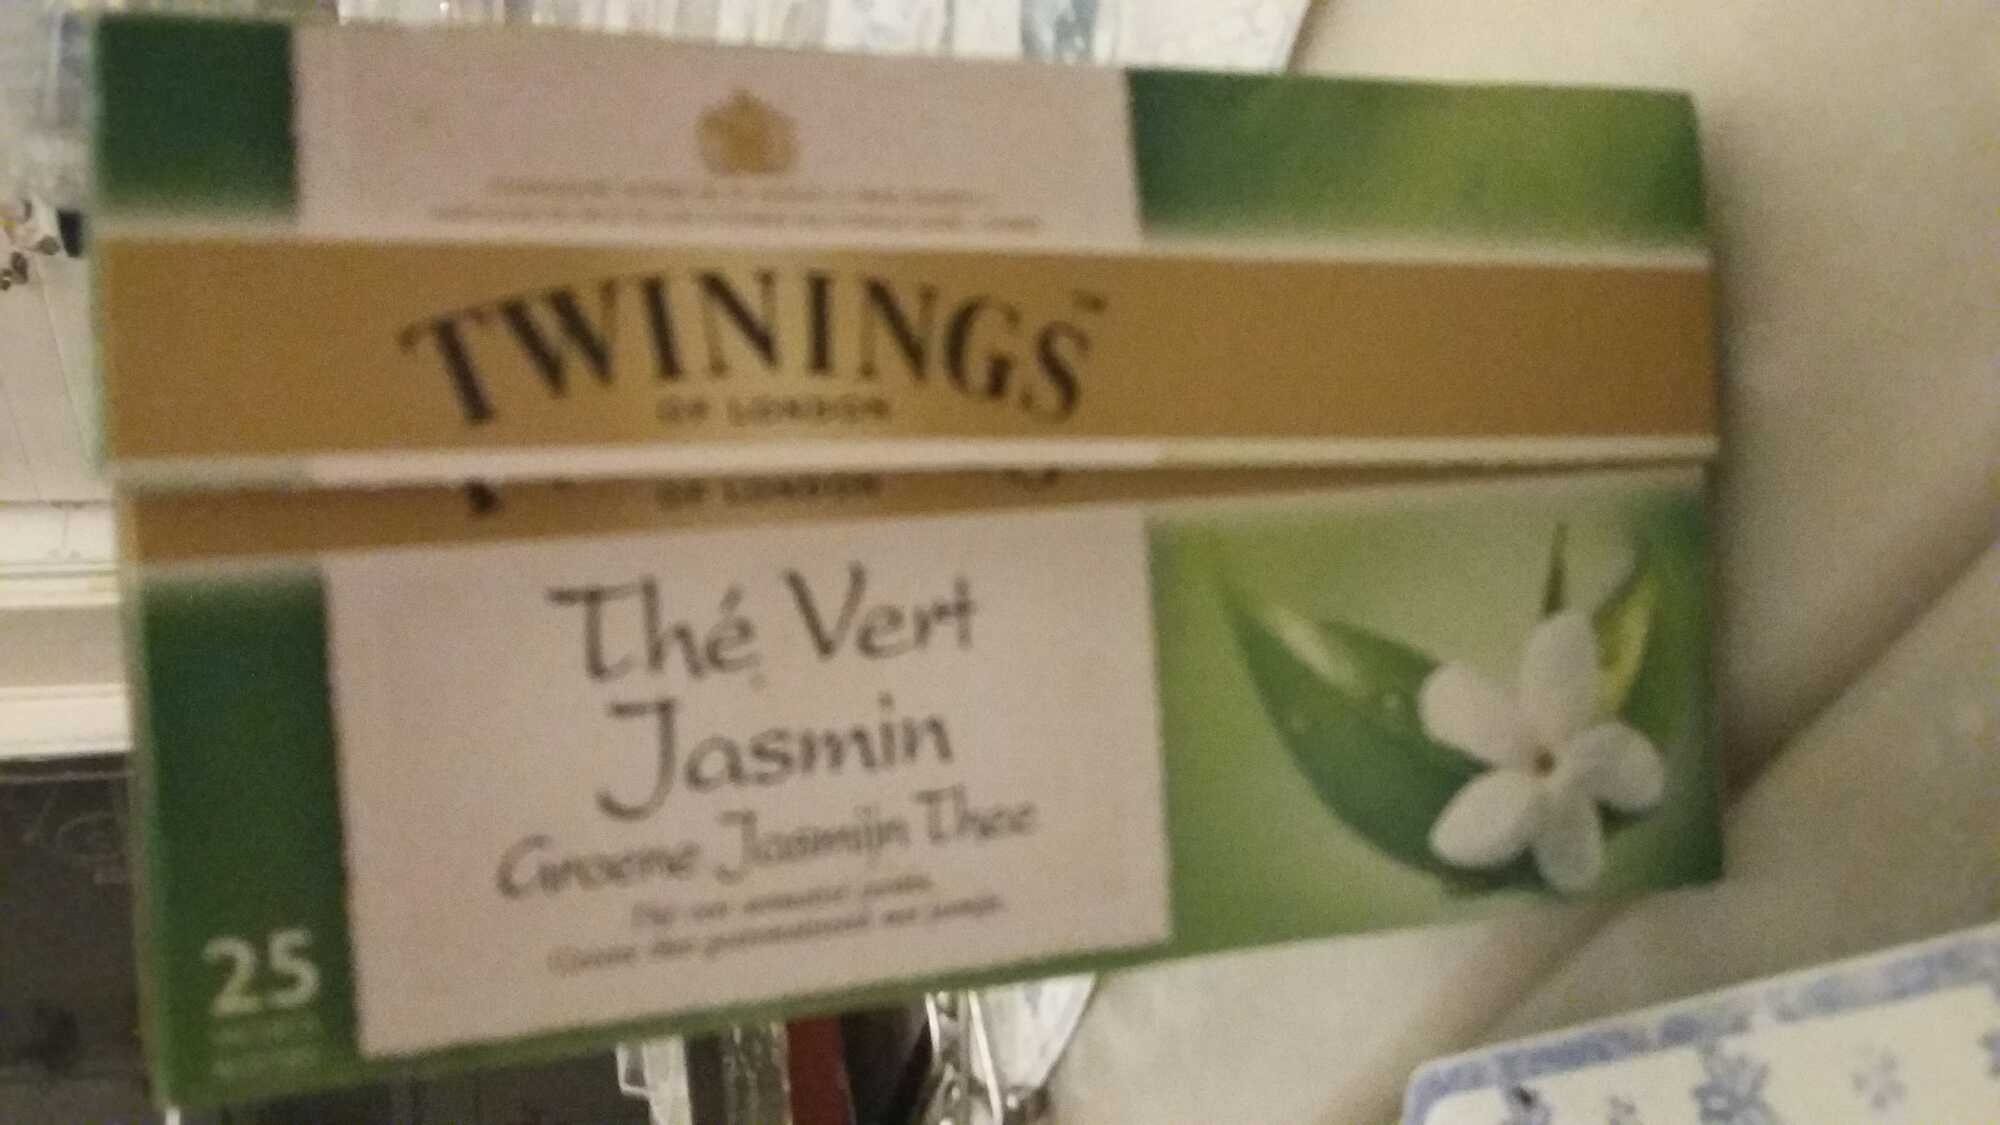 thé vert jasmin - Produit - fr